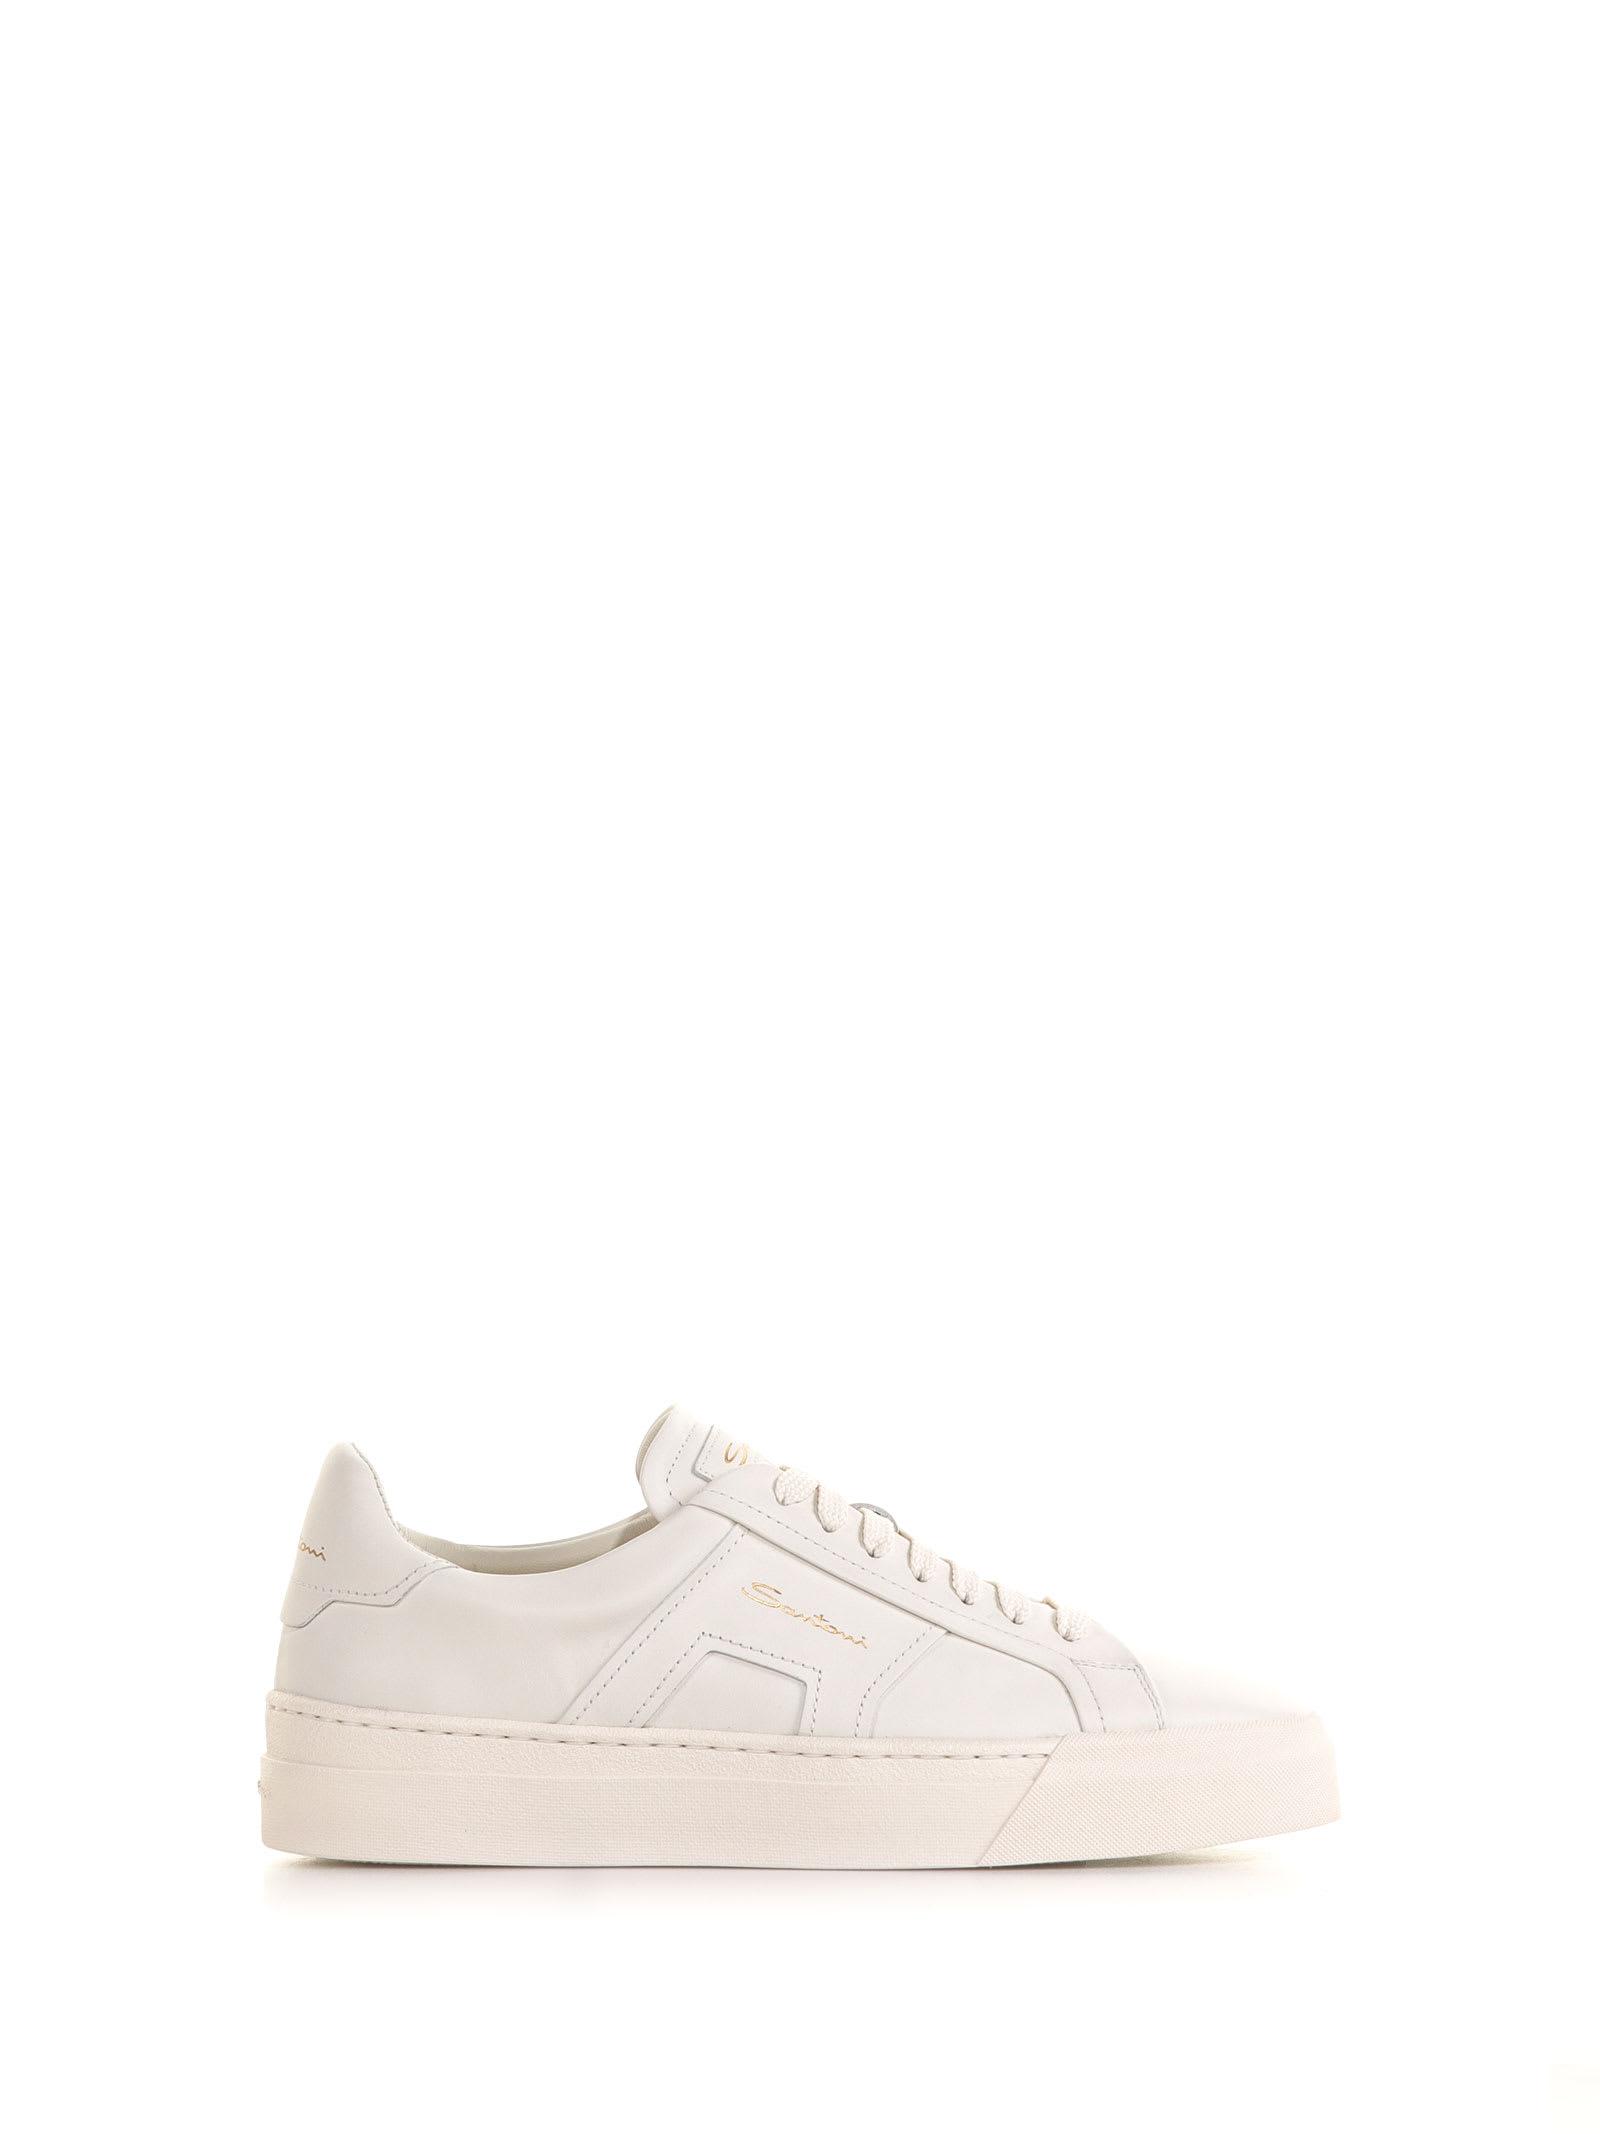 Santoni Double Buckle Sneaker In Leather in White | Lyst